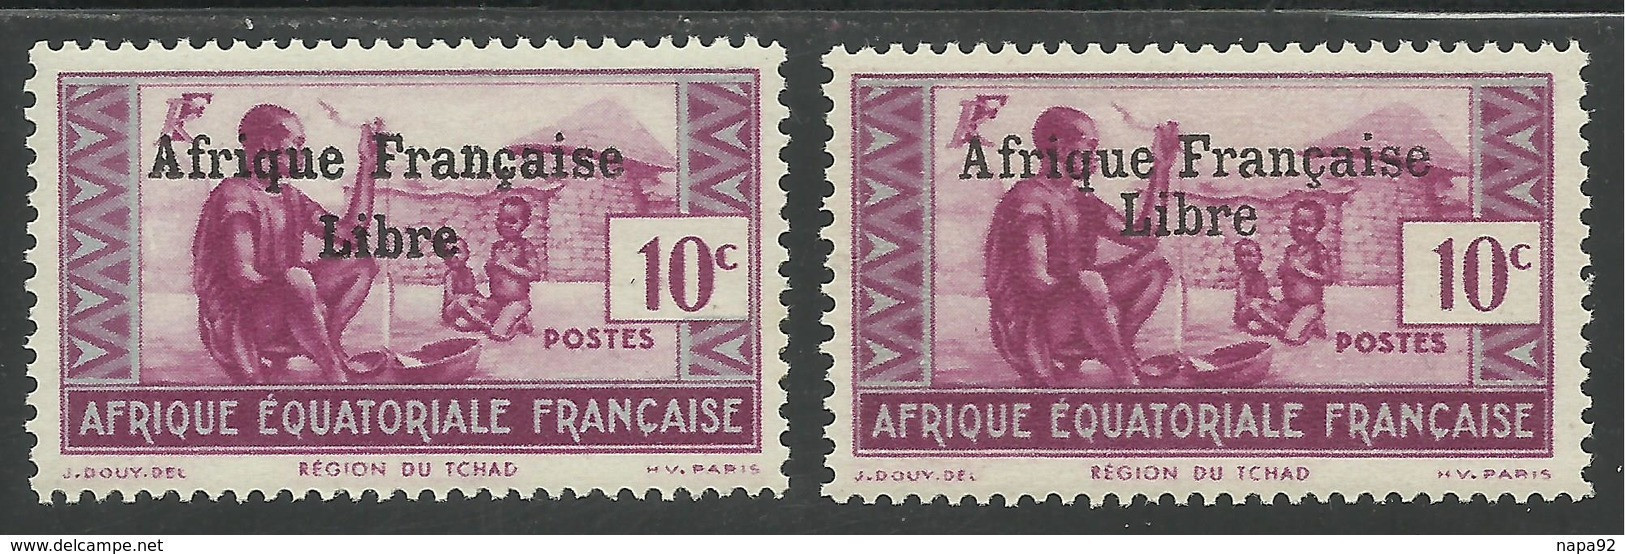 AFRIQUE EQUATORIALE FRANCAISE - AEF - A.E.F. - 1941 - YT 160** - 2ème TIRAGE - Unused Stamps